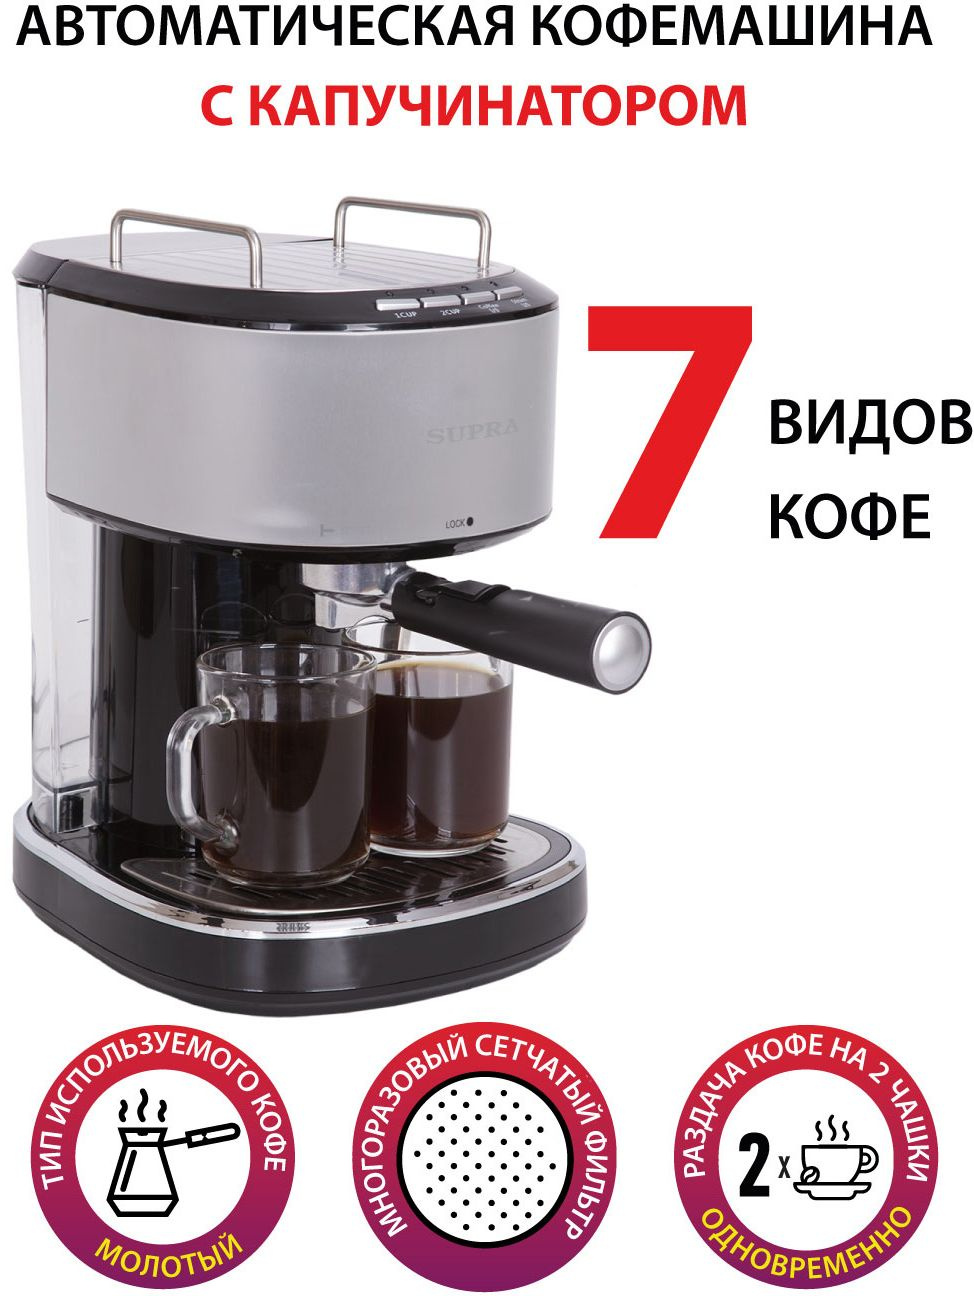 Кофеварка эспрессо Supra CMS-1515 850Вт черный/серебристый